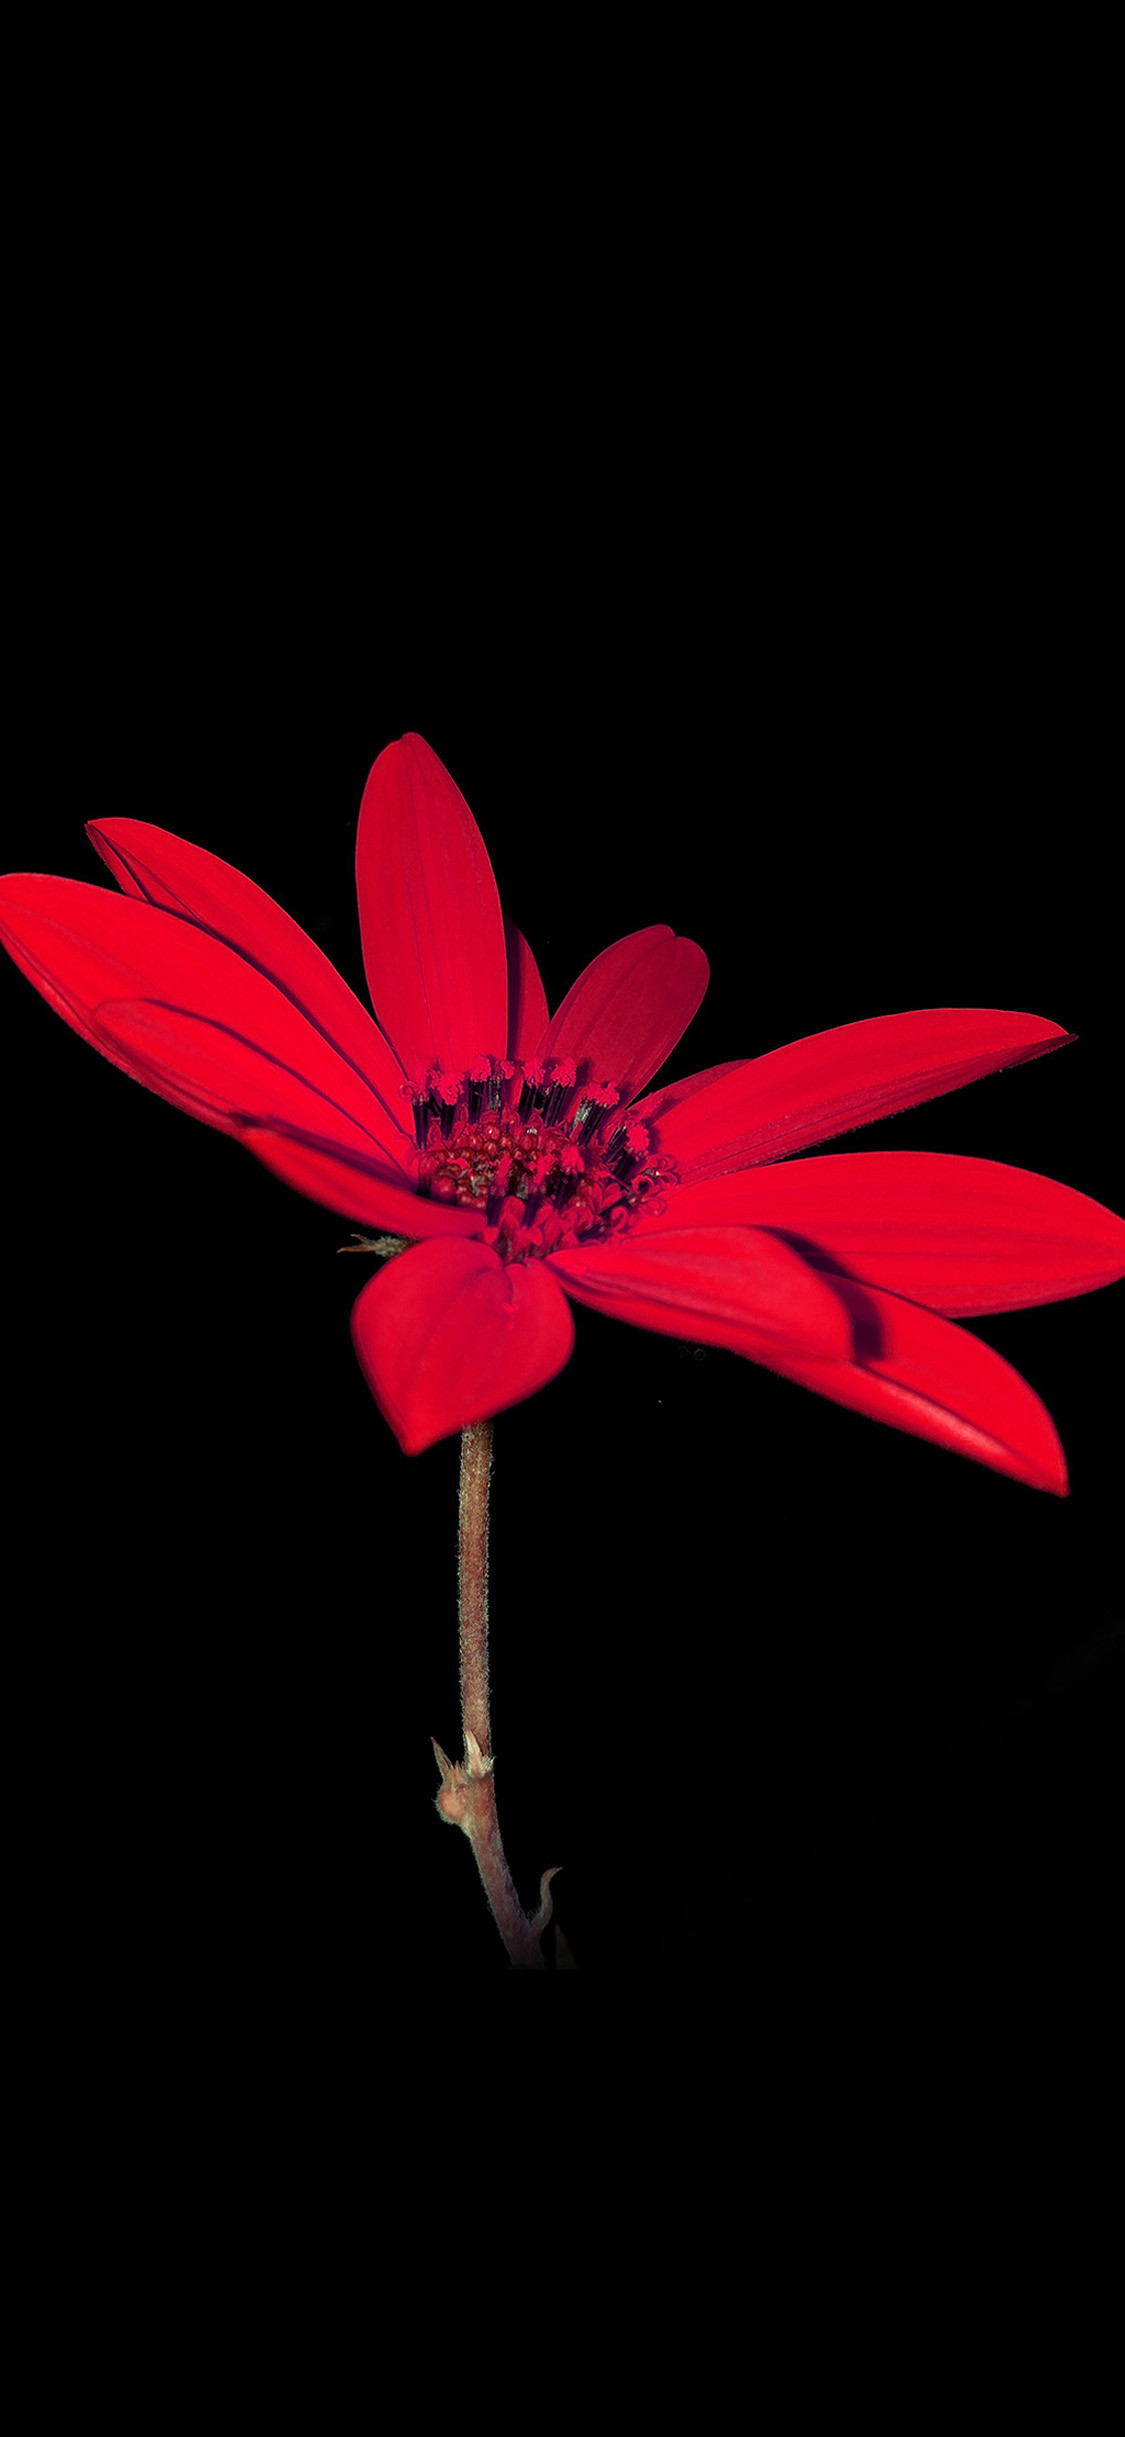 1125x2437 Red natural art flower iPhone X Wallpaper